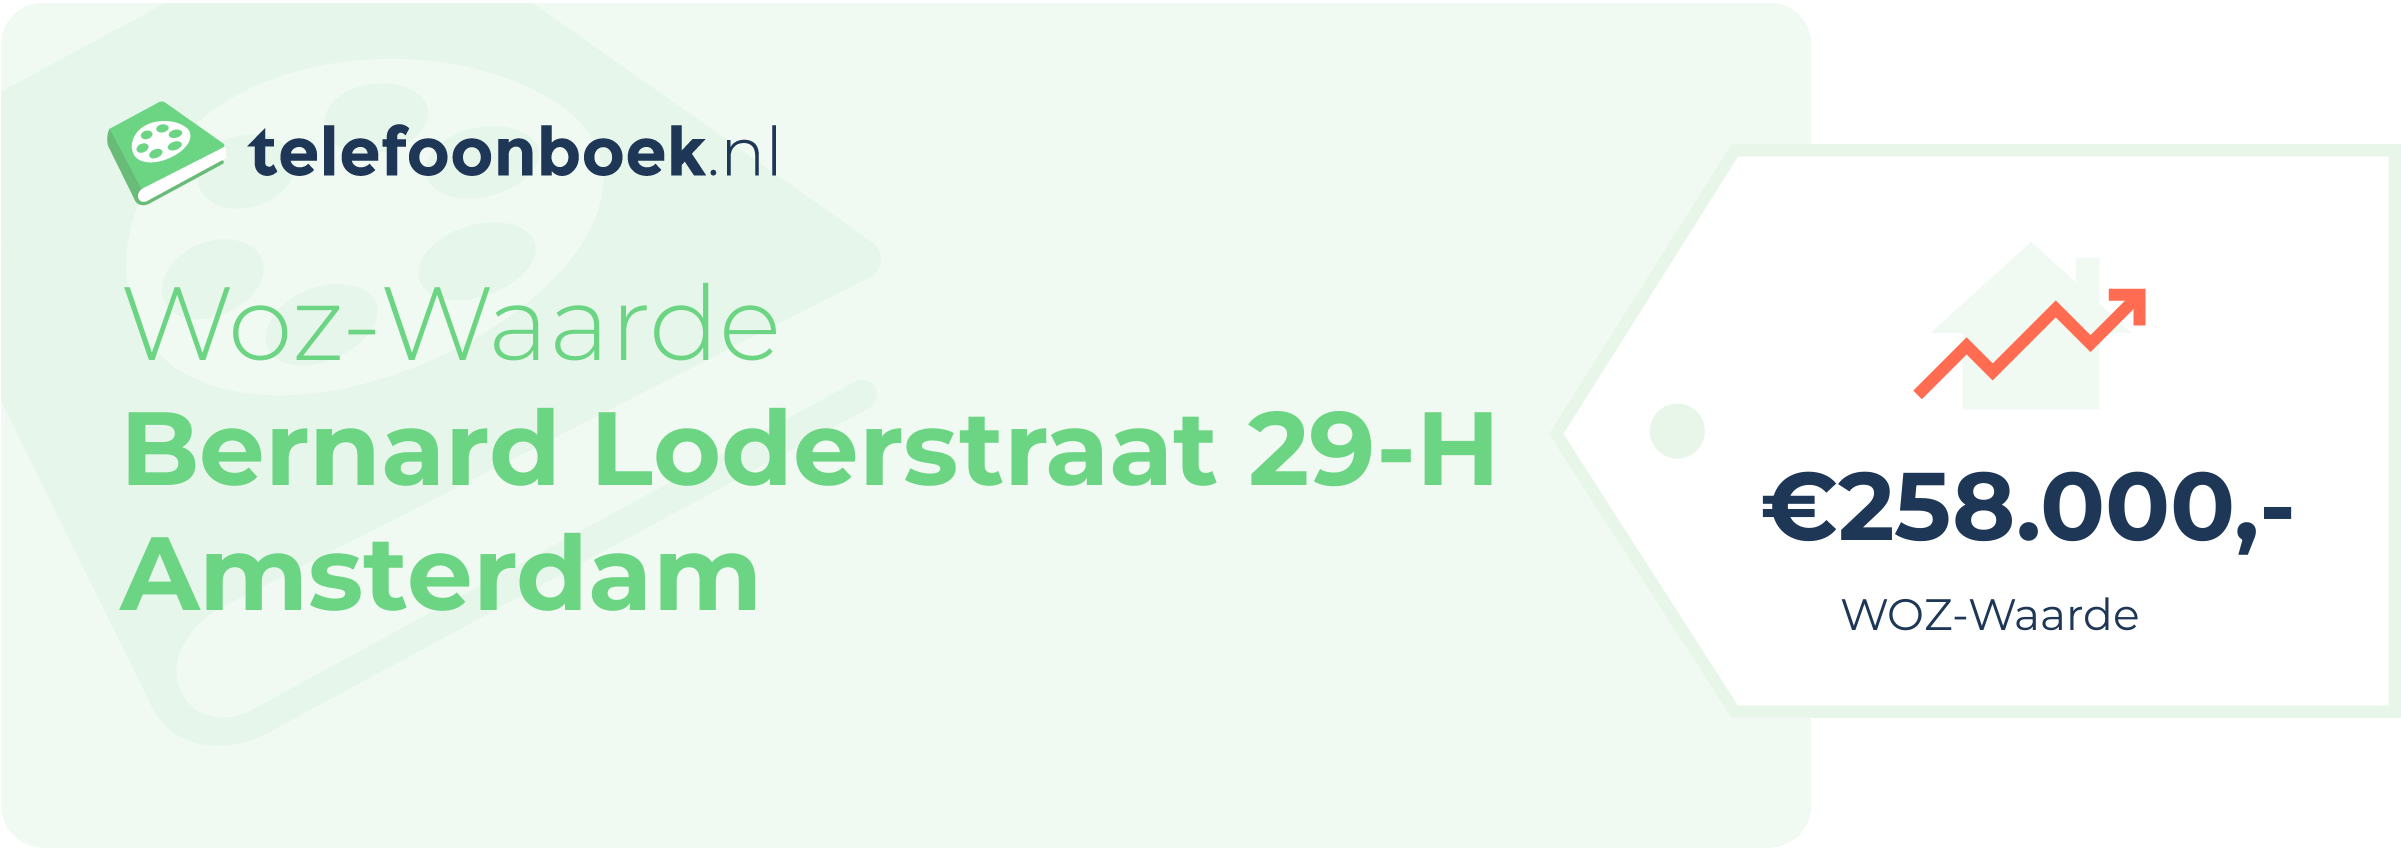 WOZ-waarde Bernard Loderstraat 29-H Amsterdam